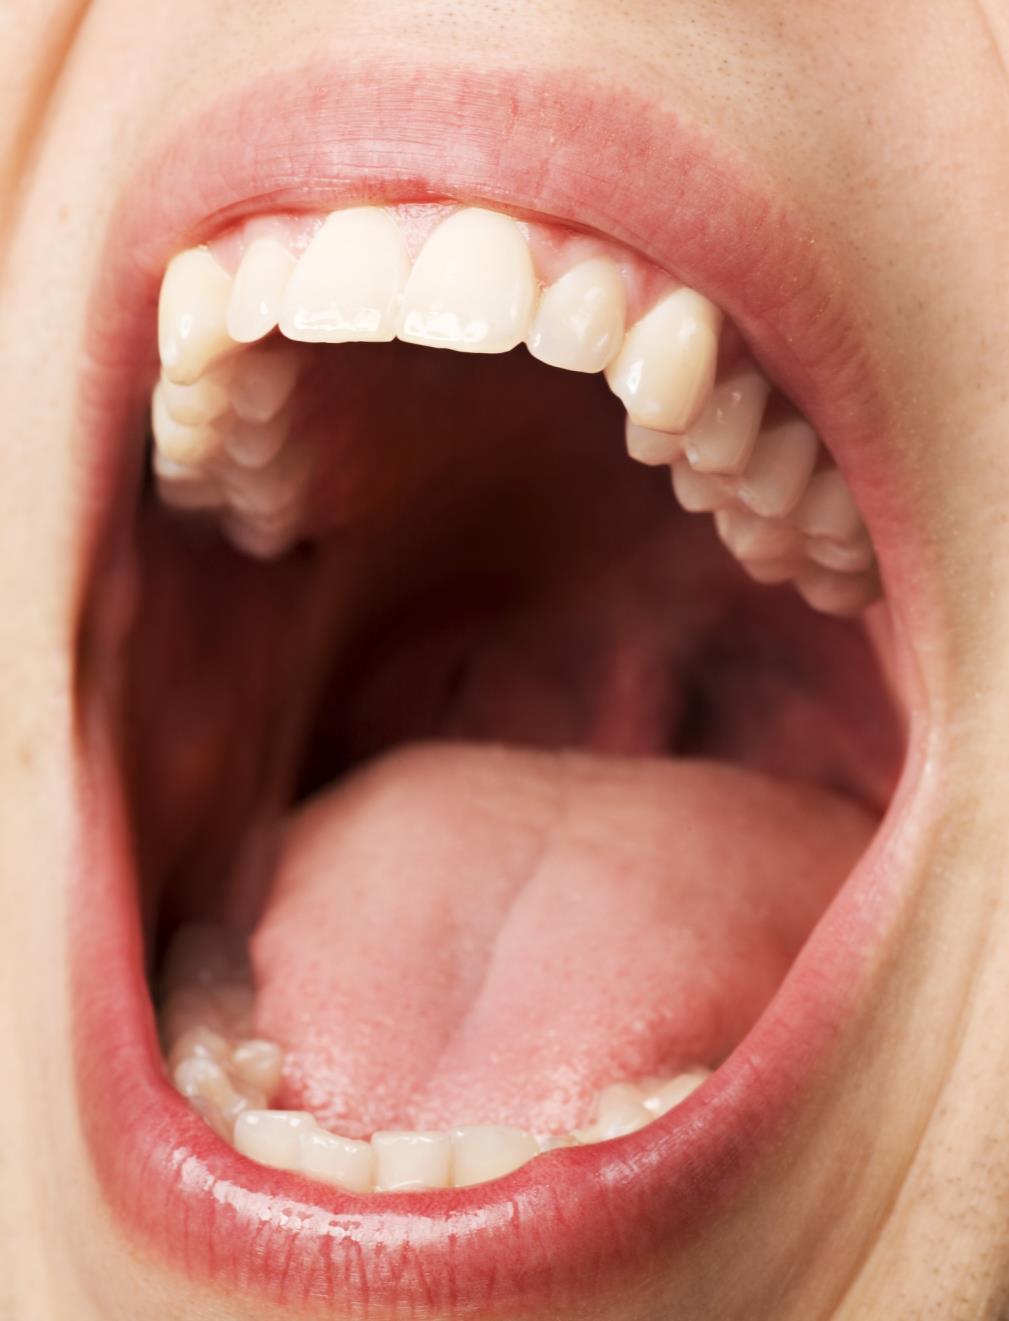 CAVIDAD ORAL Vestíbulo Oral Cavidad Oral Separadas por procesos